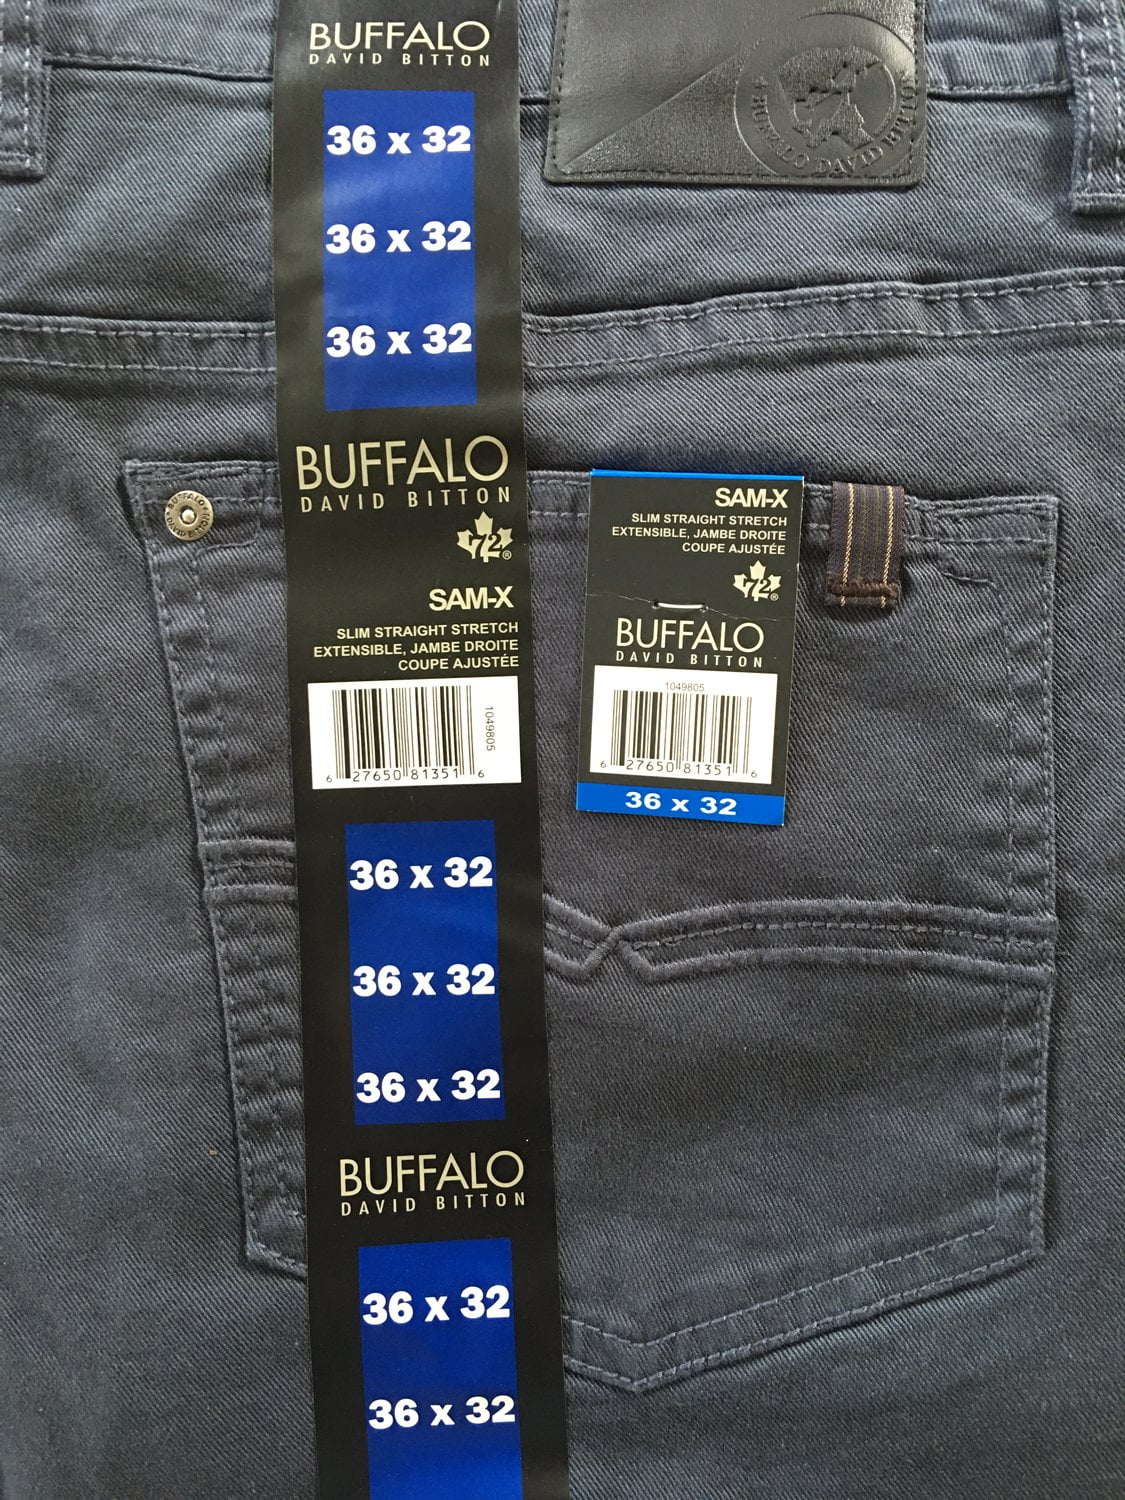 buffalo david bitton jeans sam x